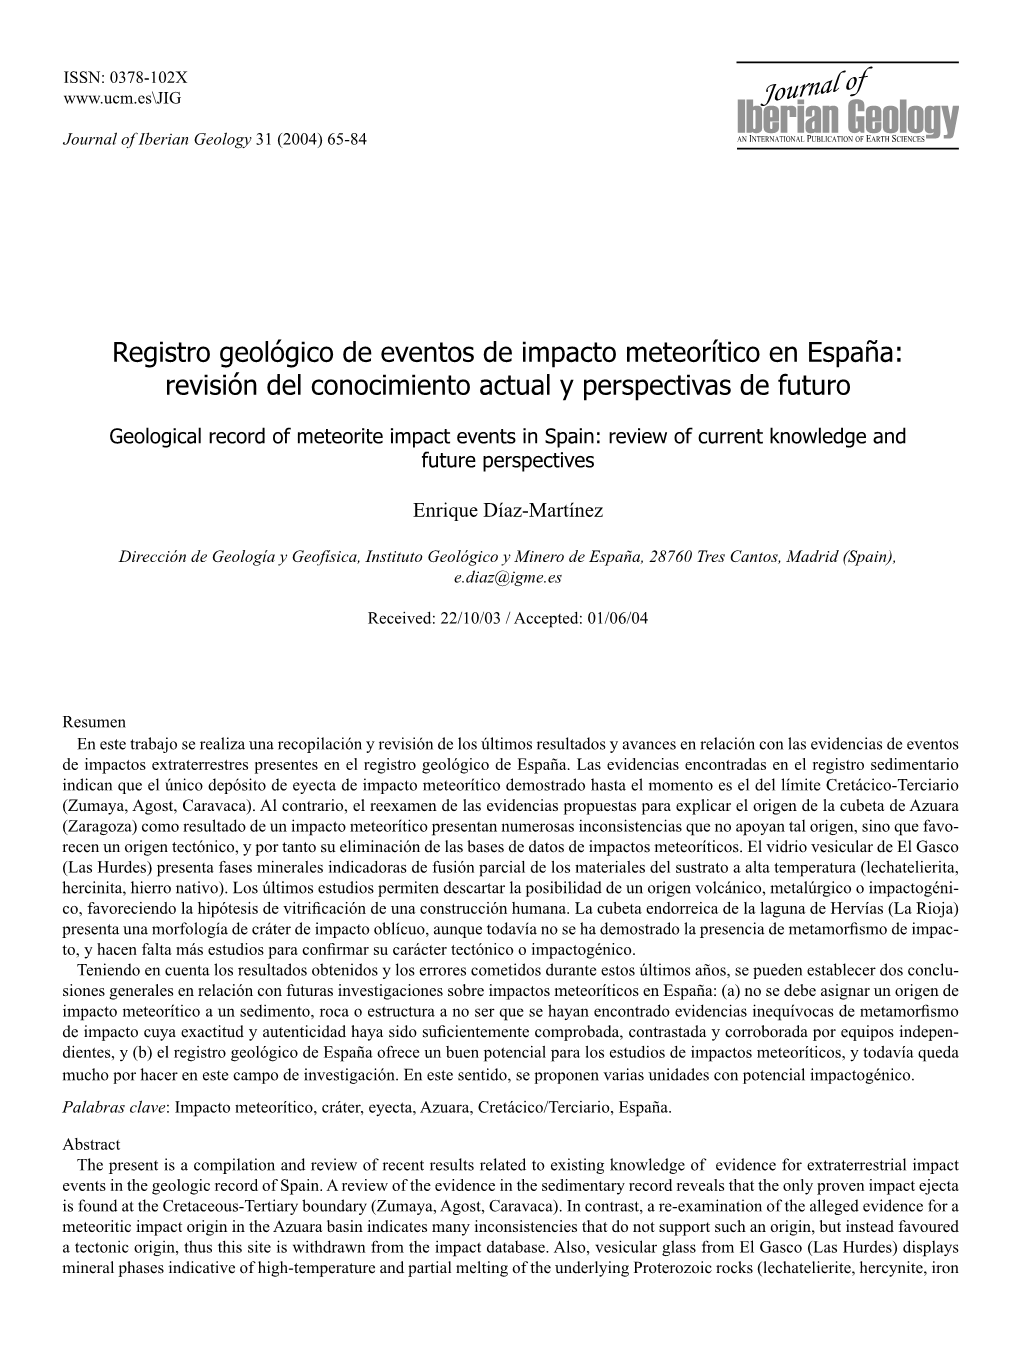 Registro Geológico De Eventos De Impacto Meteorítico En España: Revisión Del Conocimiento Actual Y Perspectivas De Futuro